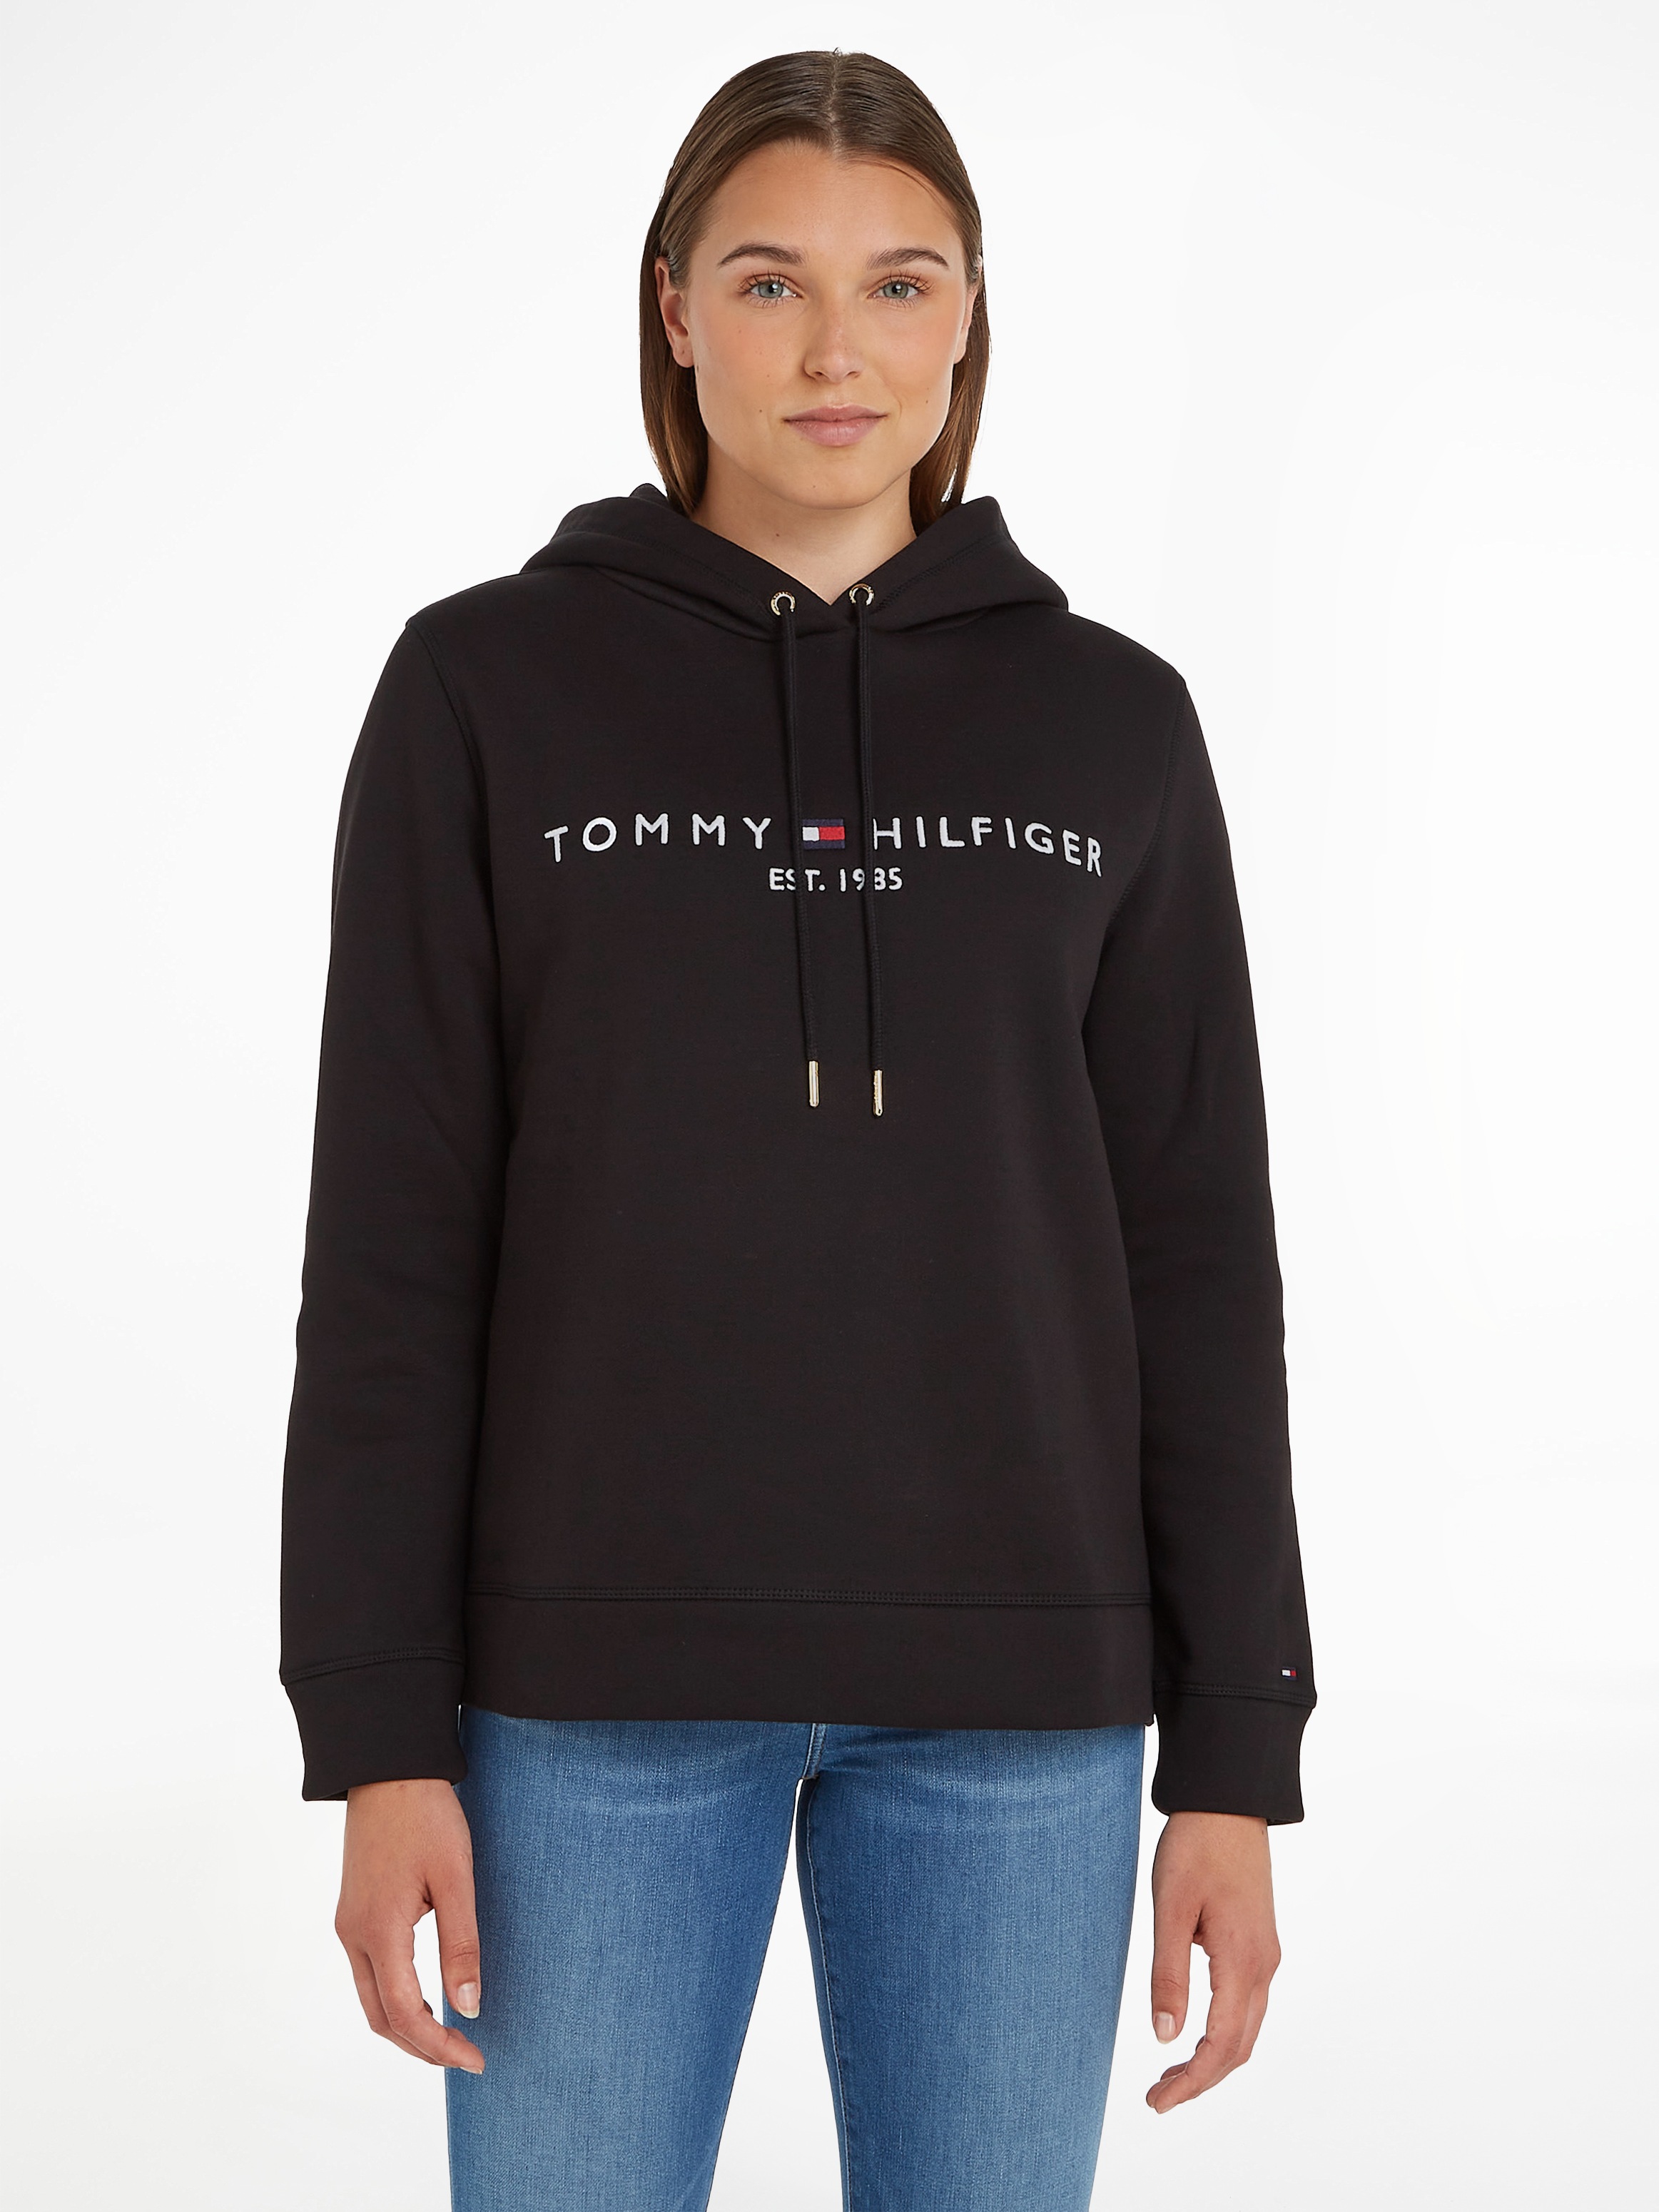 Tommy Hilfiger Kapuzensweatshirt, mit Tommy Hilfiger Logostickerei-Tommy Hilfiger 1